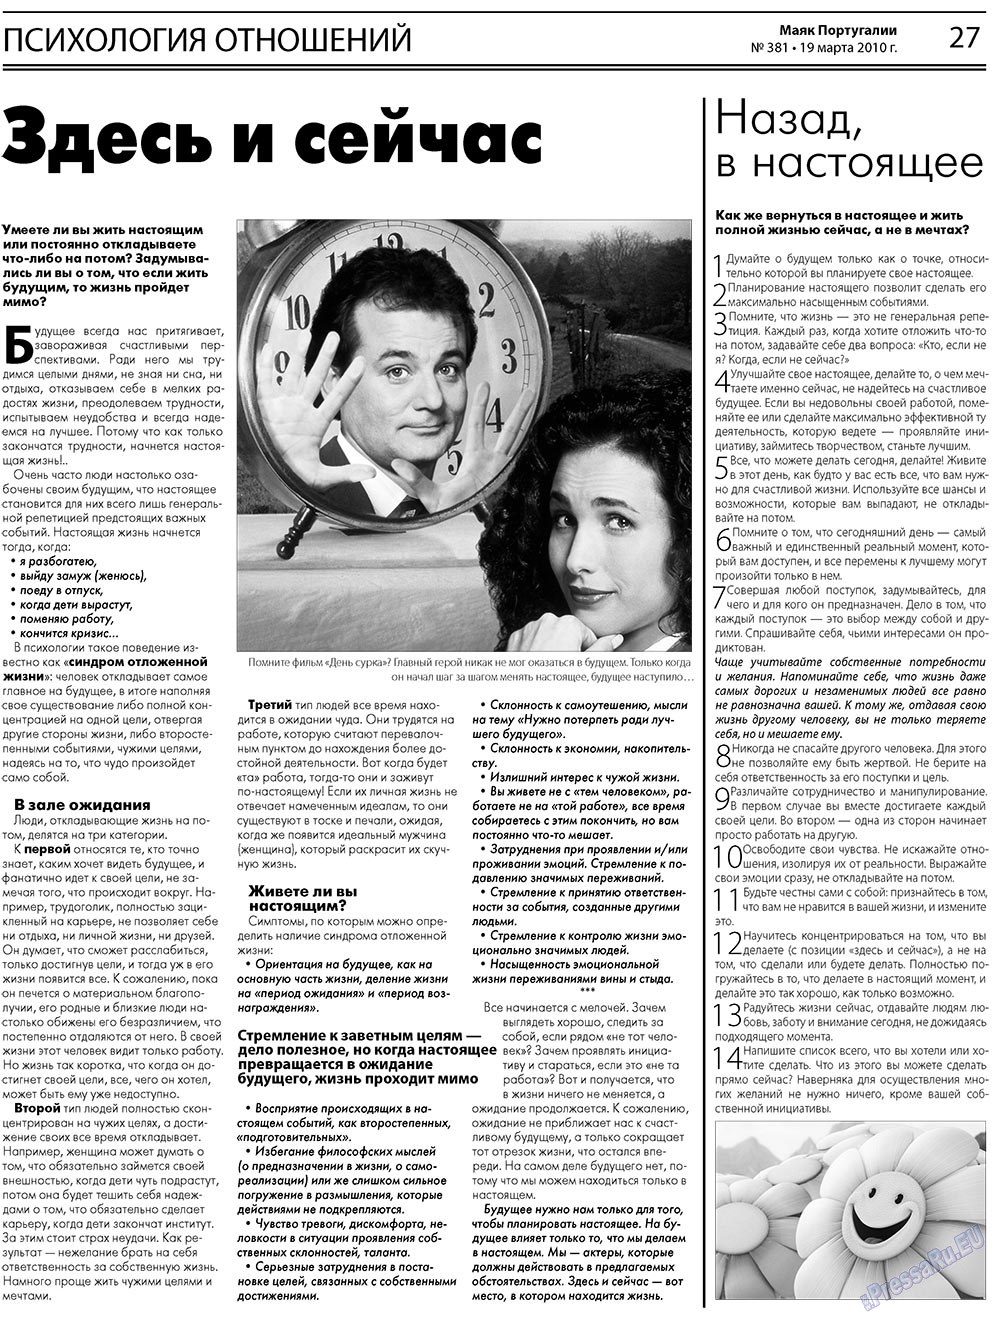 Маяк Португалии (газета). 2010 год, номер 381, стр. 27